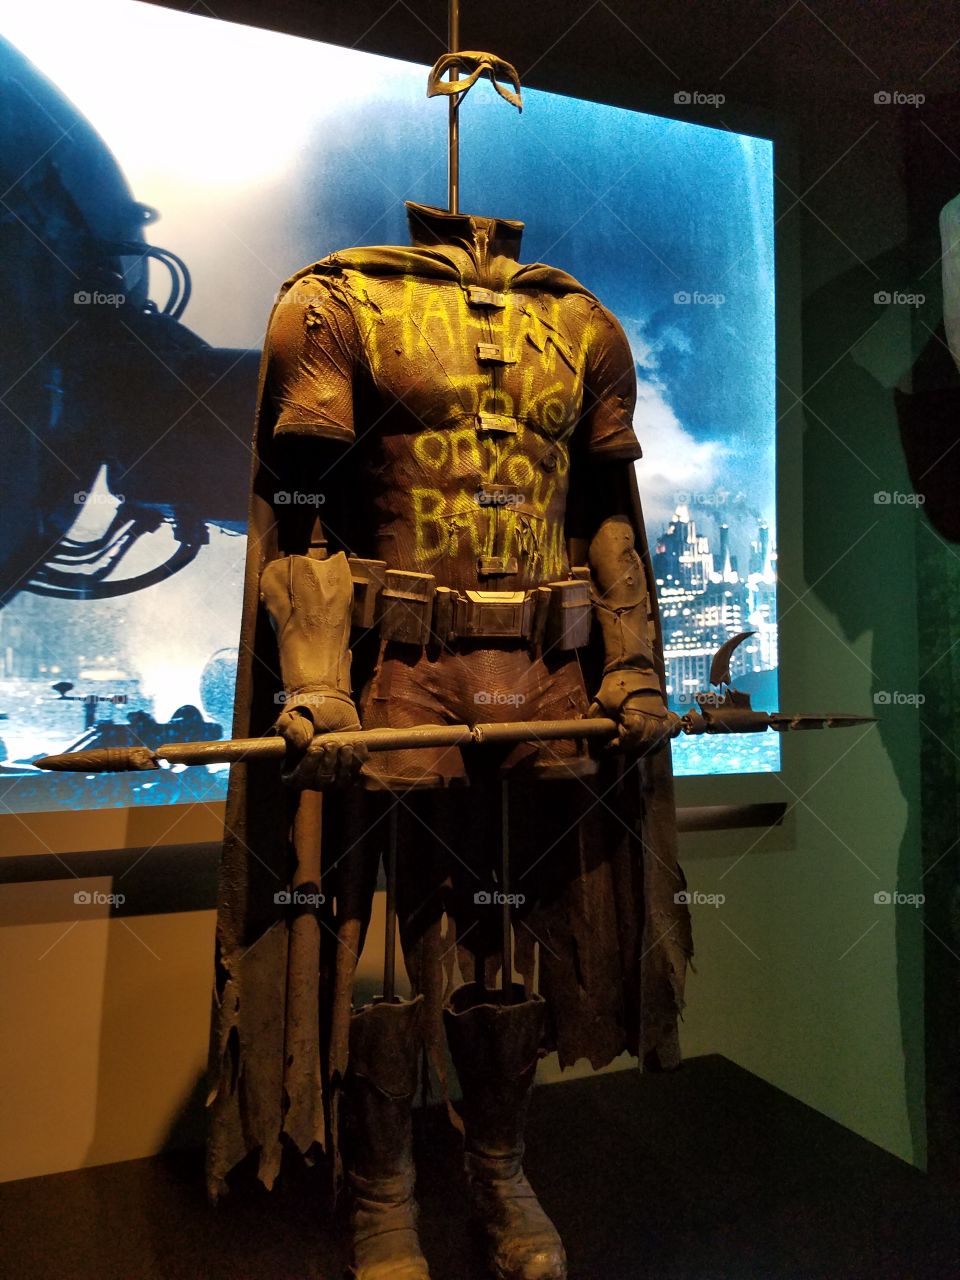 Batman's Costume